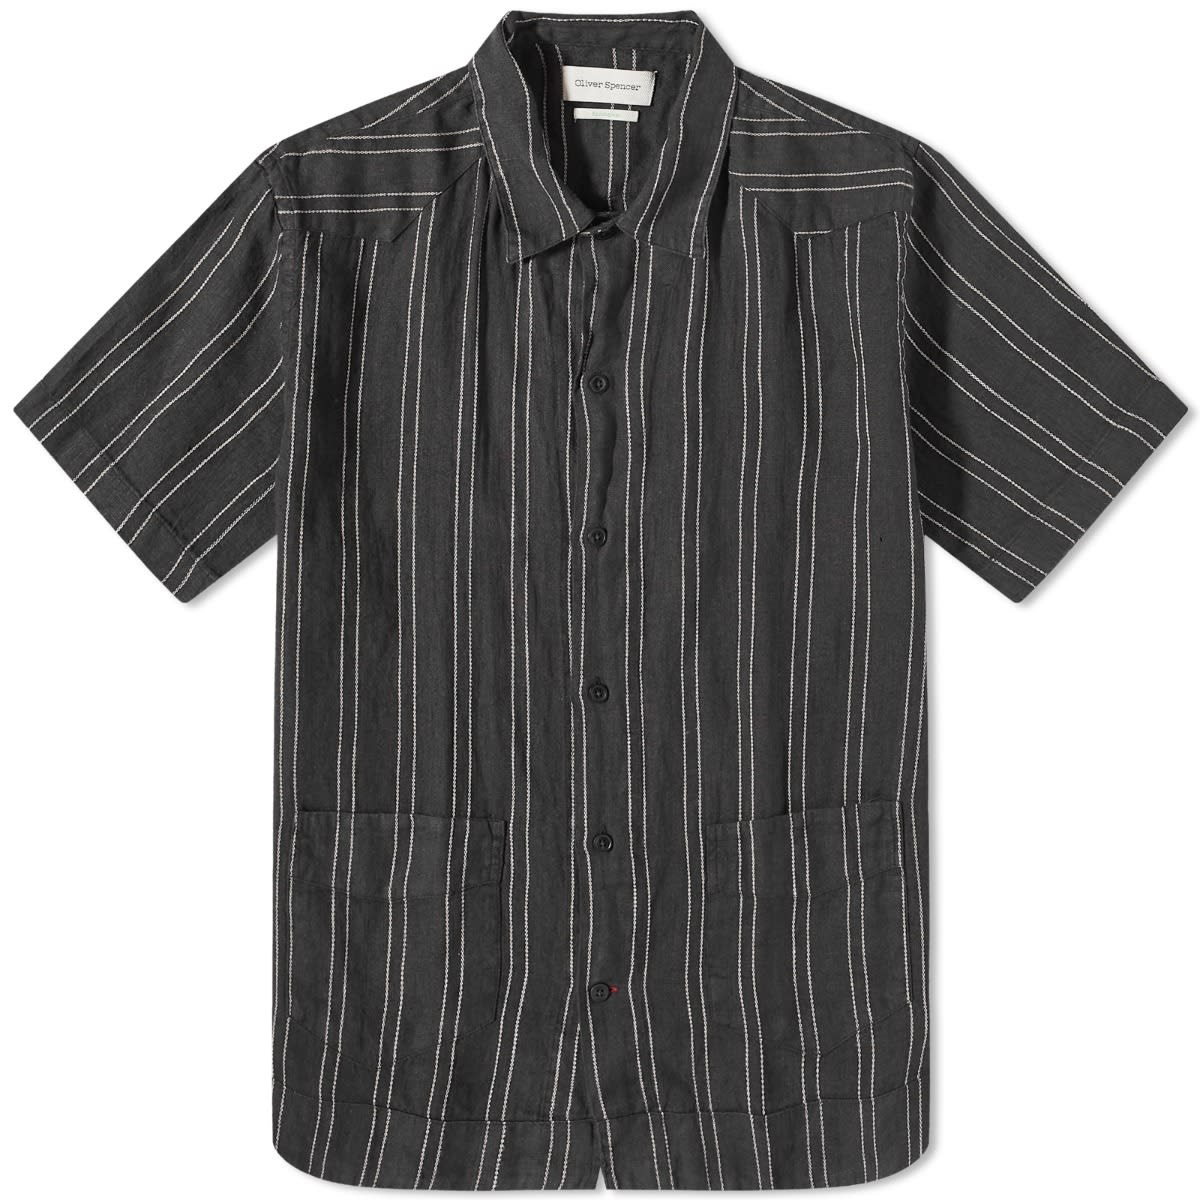 Oliver Spencer Cuban Short Sleeve Shirt - 1